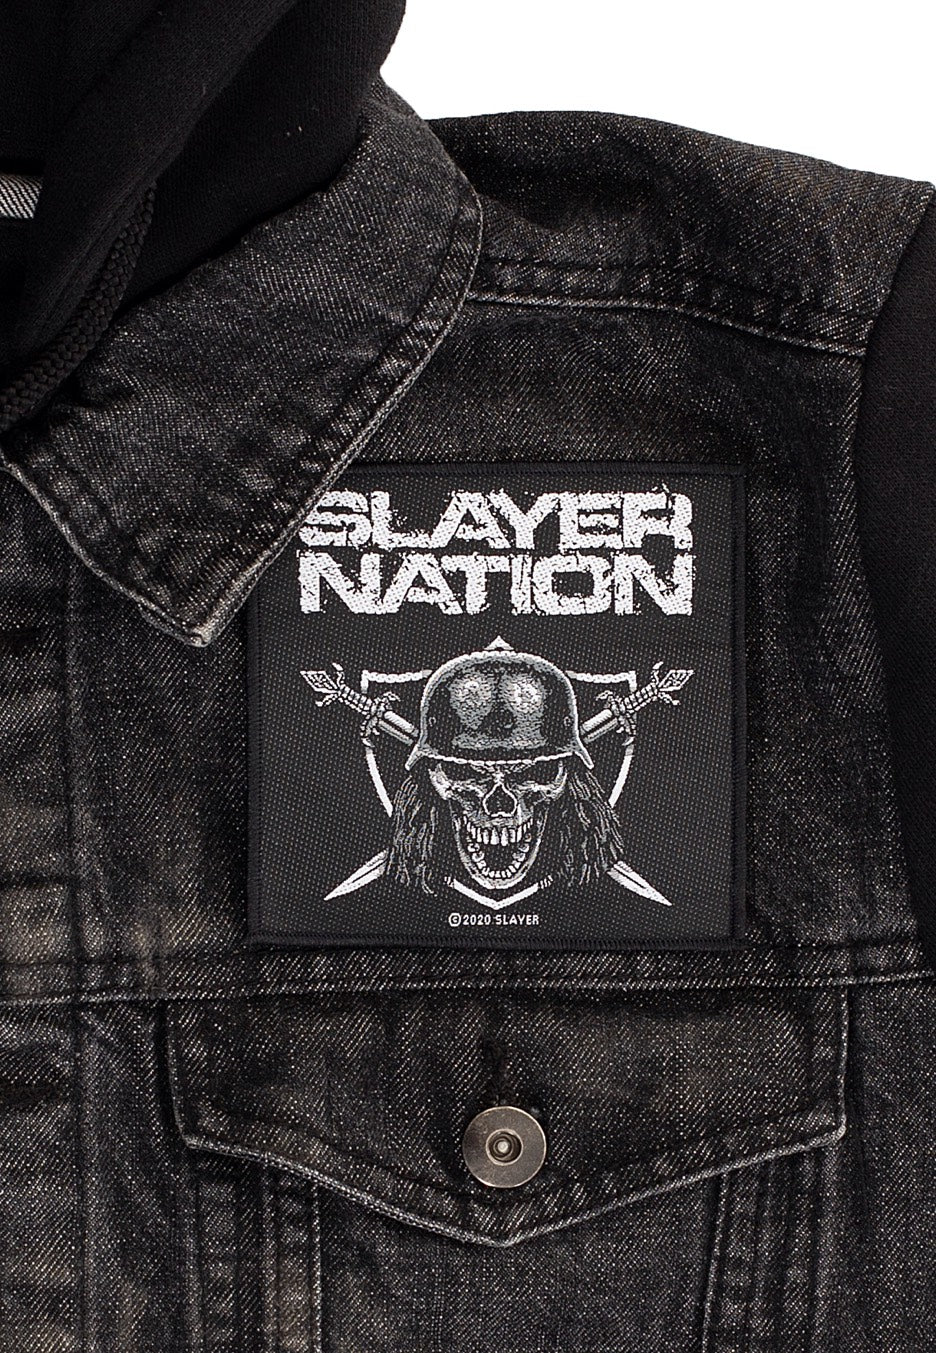 Slayer - Slayer Nation - Patch